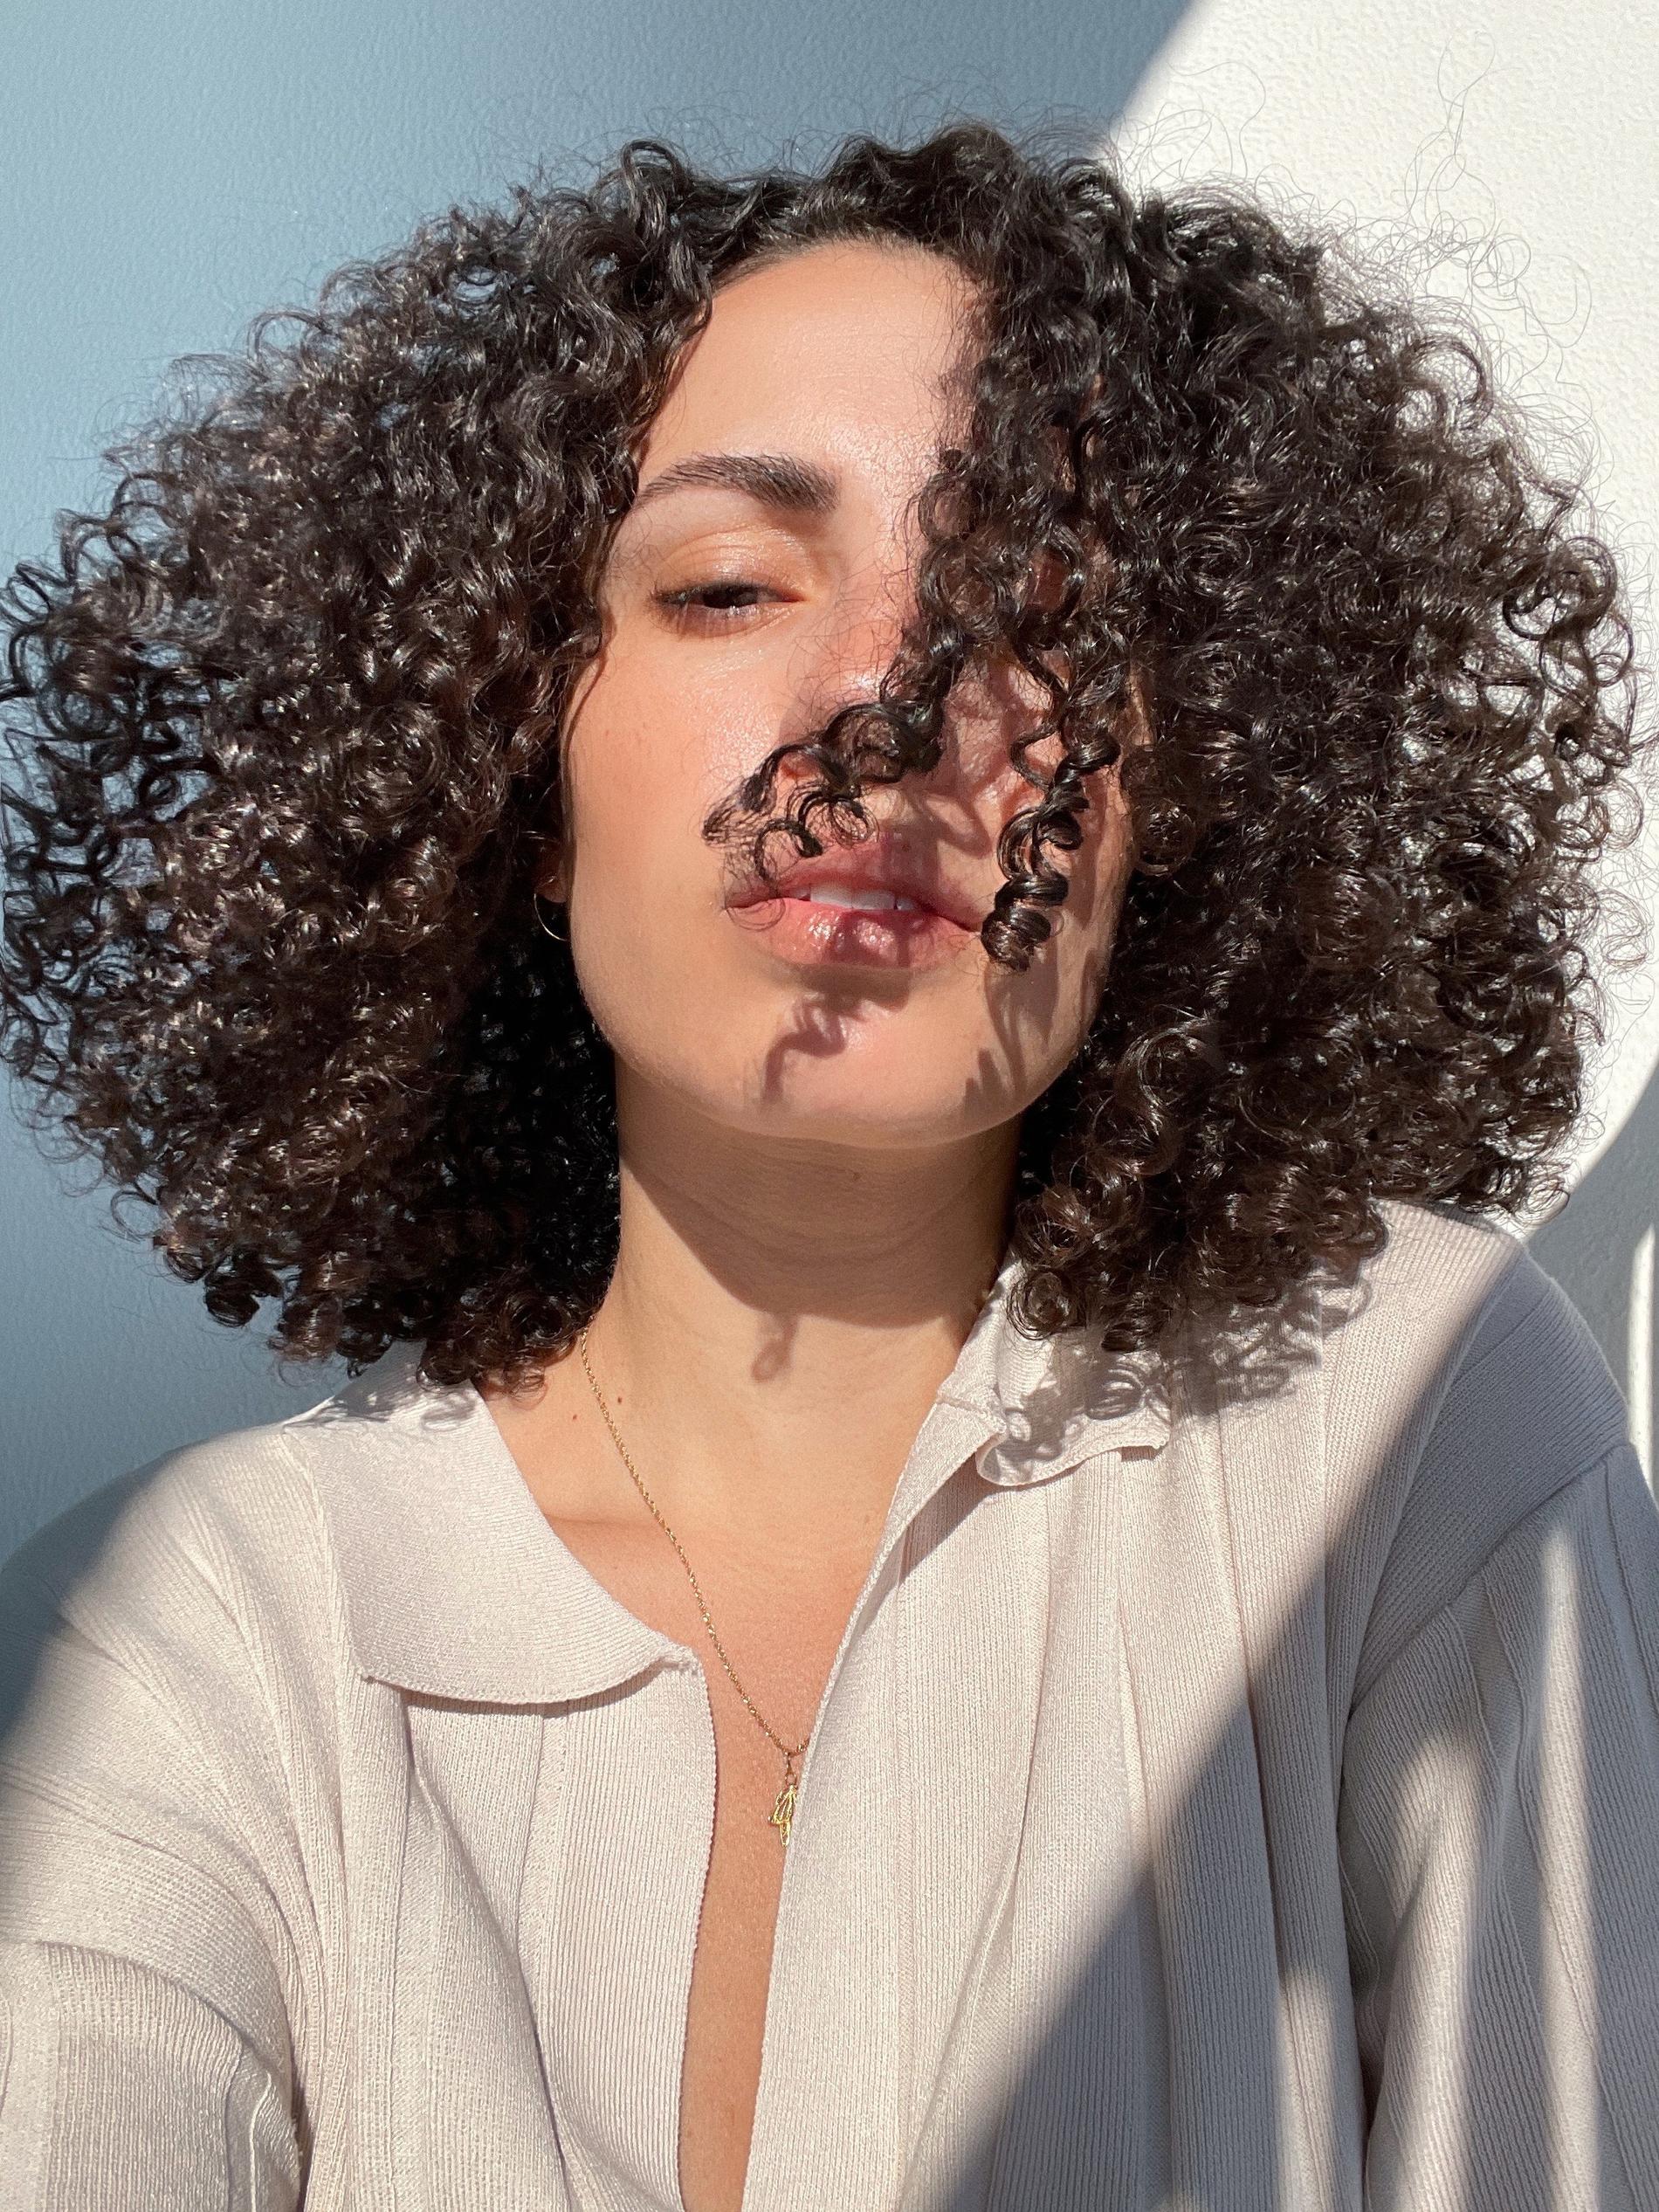 Sofia Hassani driver Instagram-kontot @curlsfirst där hon delar med sig av sina kunskaper om lockigt hår.